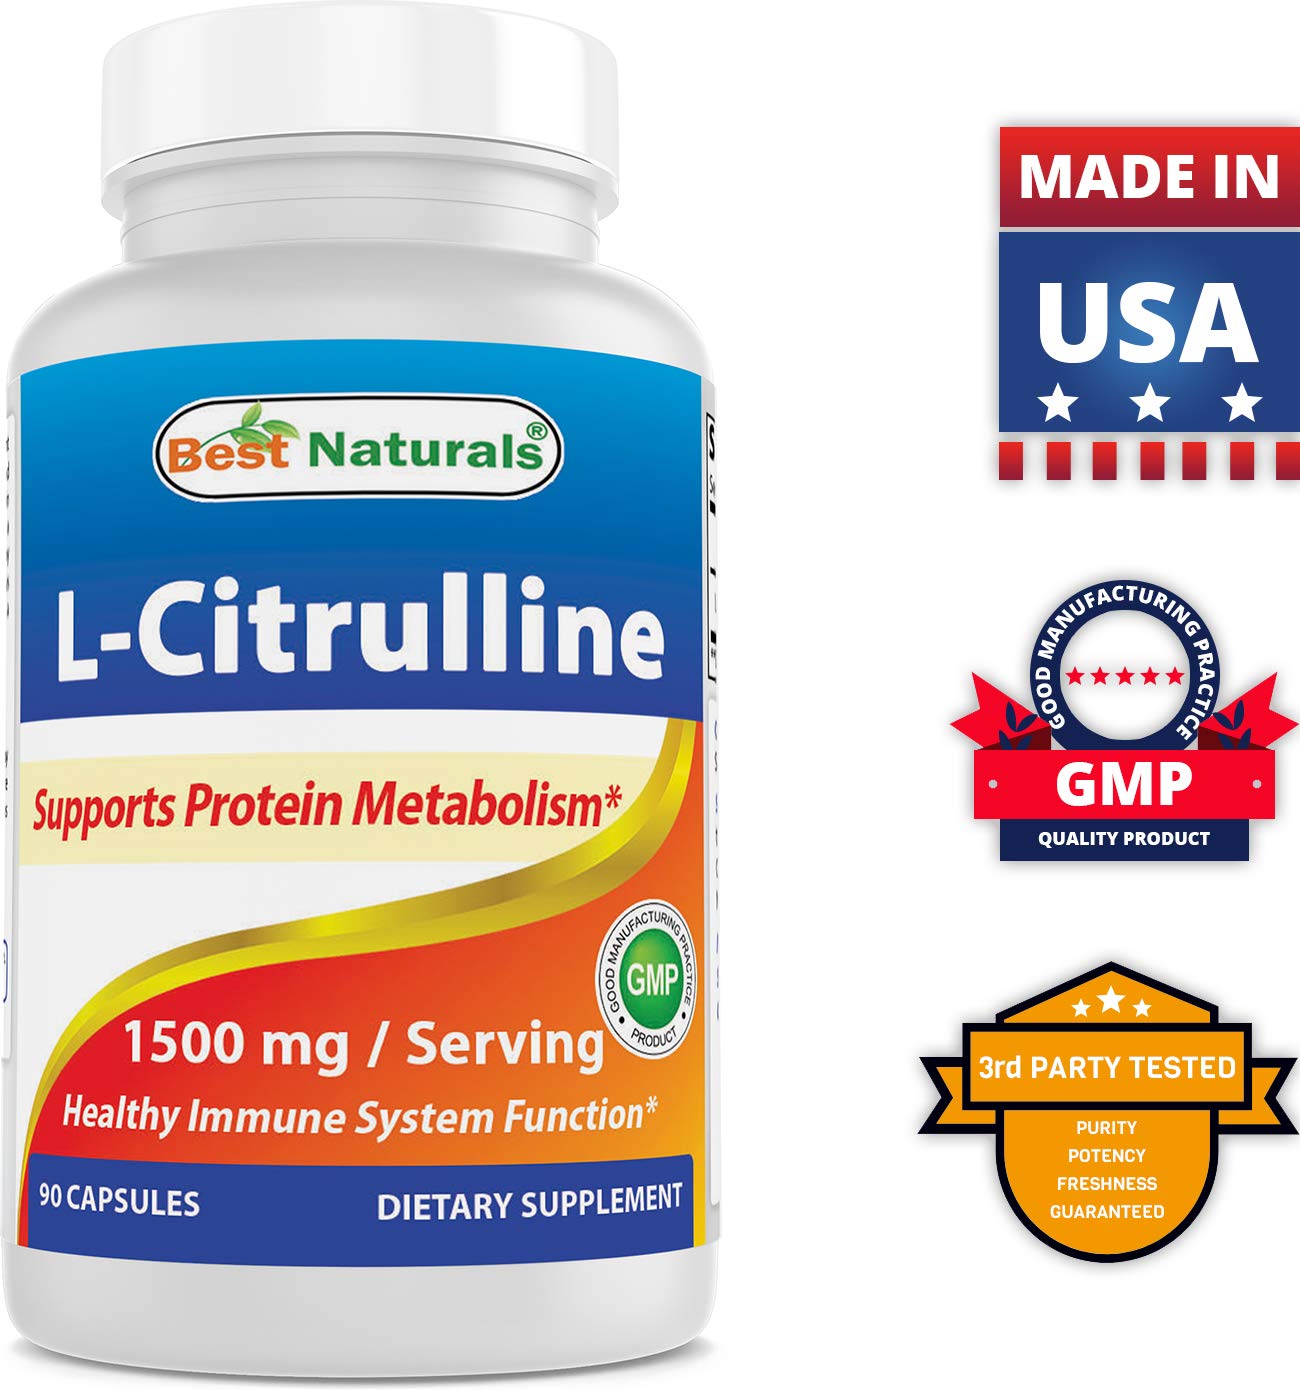 Best Naturals L-Arginine 1000 mg & L-Citrulline 1500mg